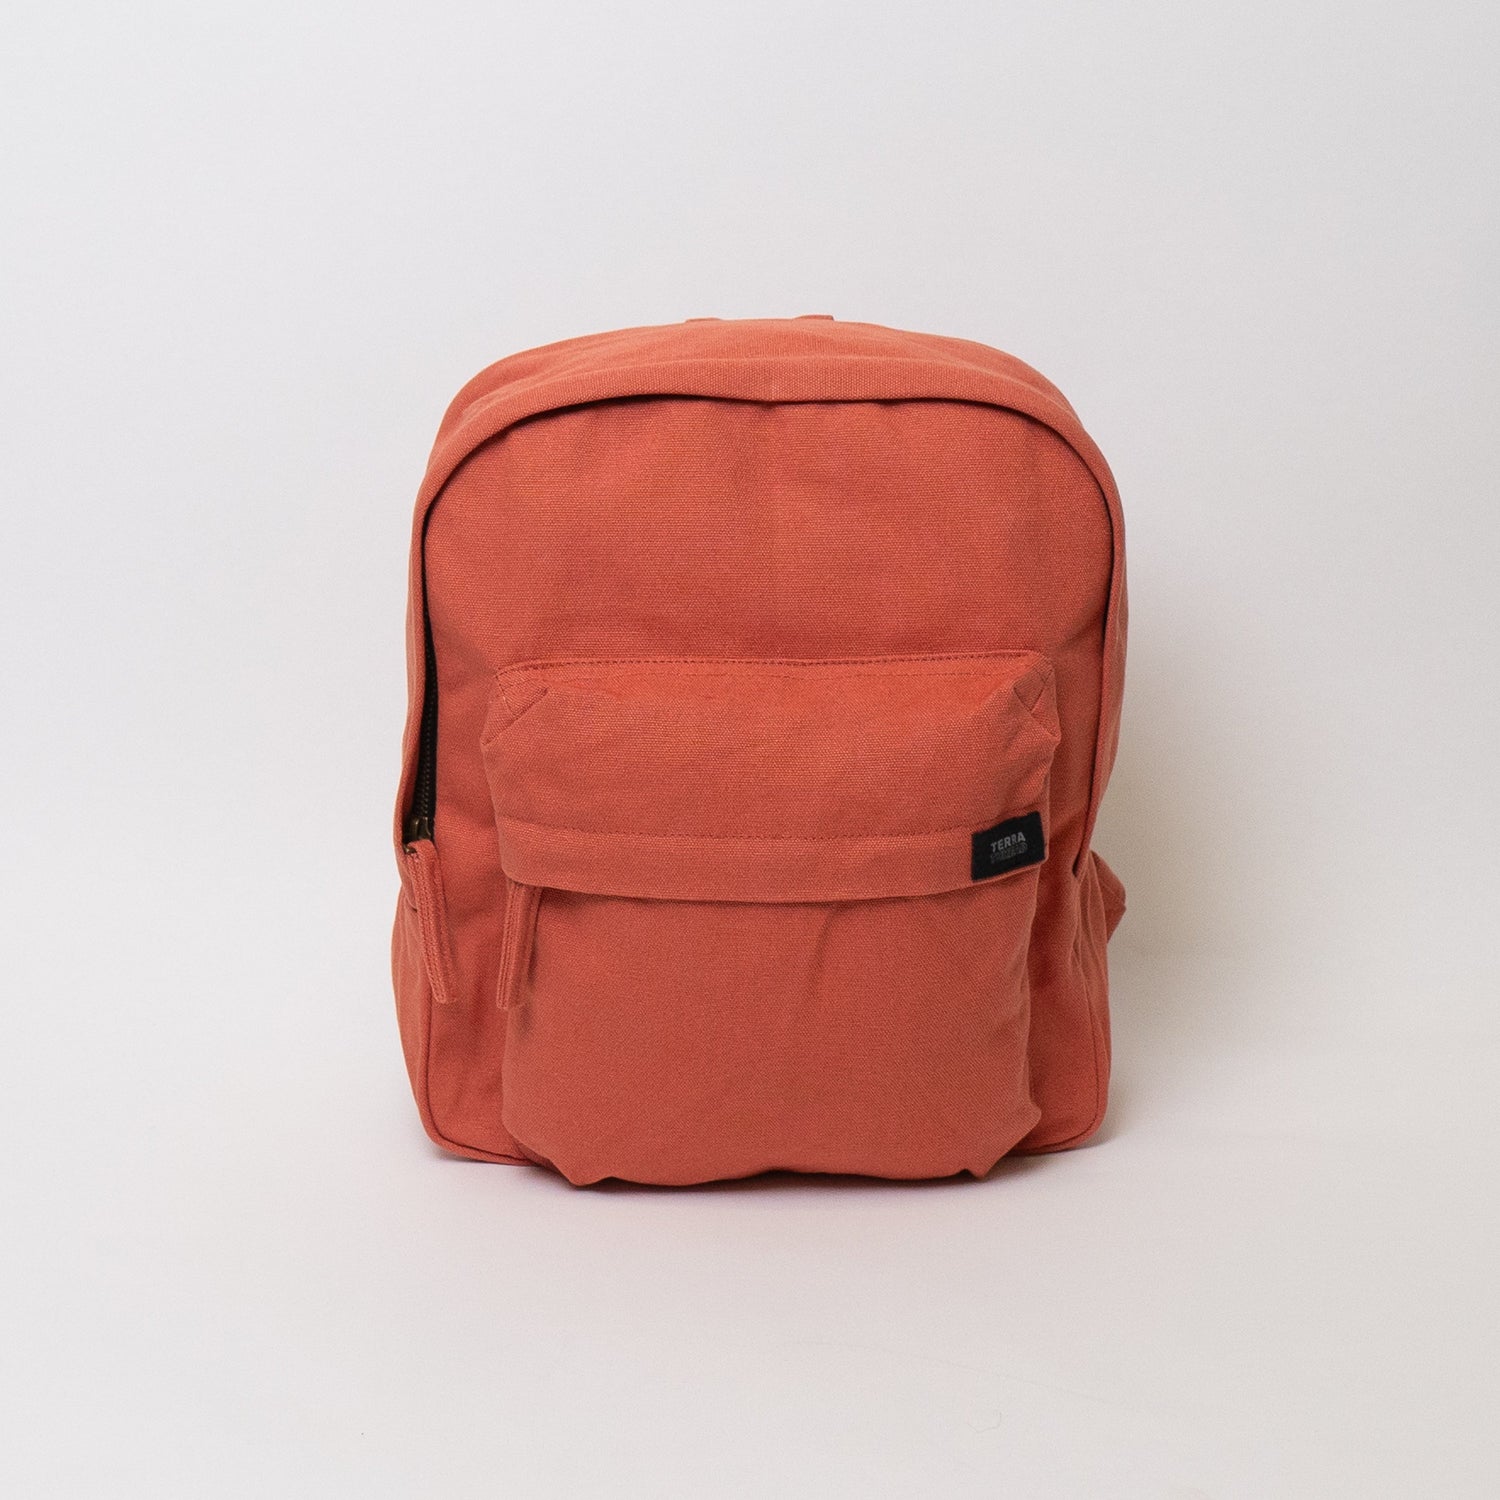 Rosie Black Mini Backpack  Sustainable Vegan backpack